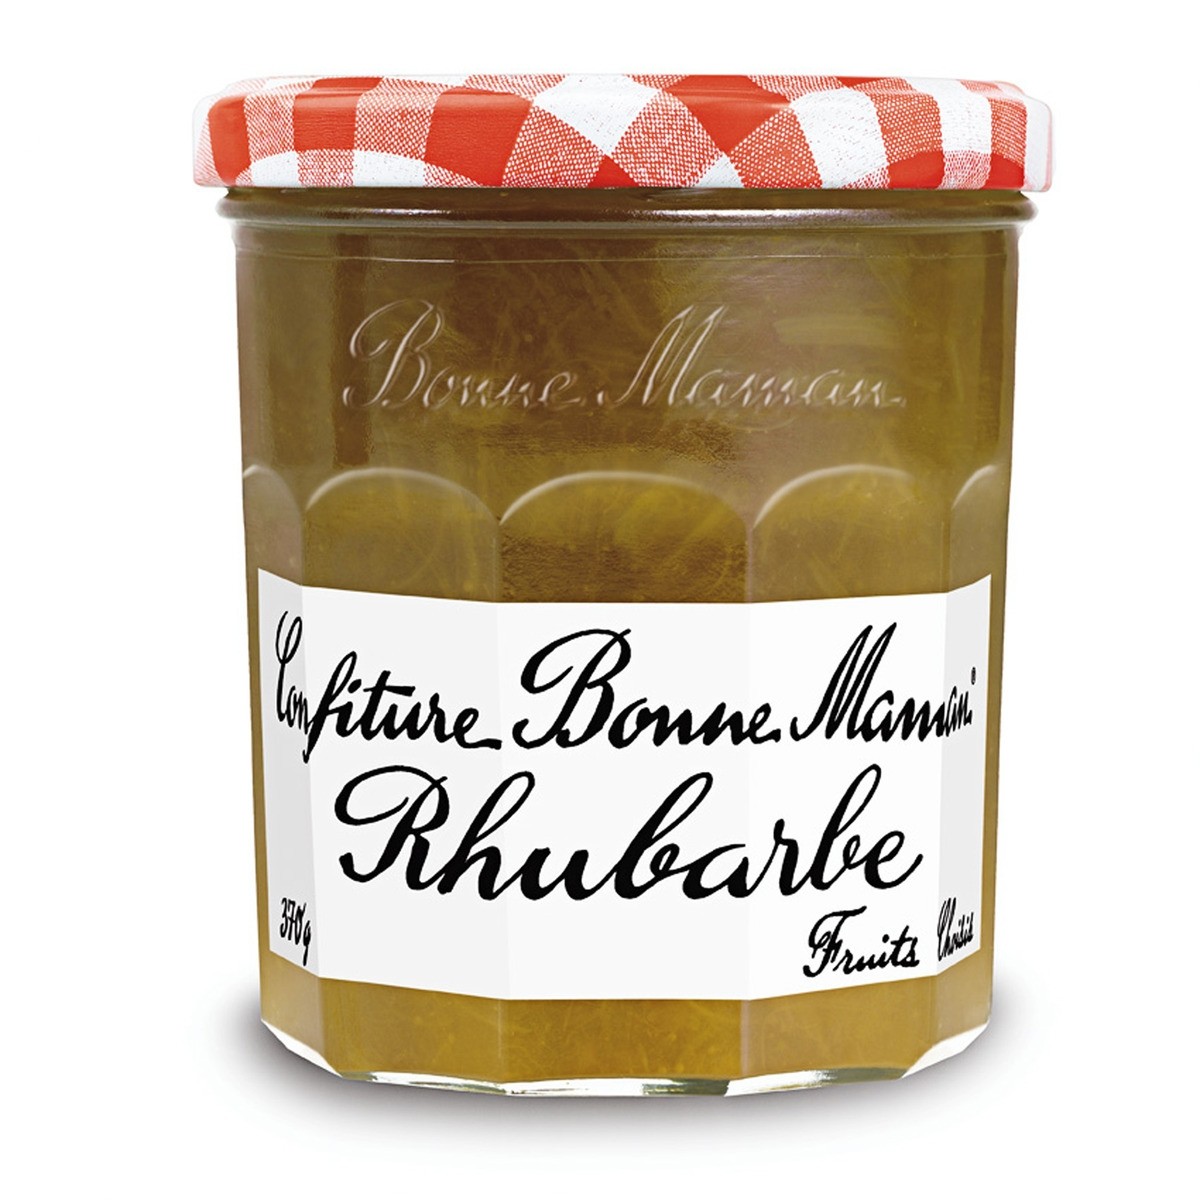 Rhubarb Jam, Bonne Maman From France 